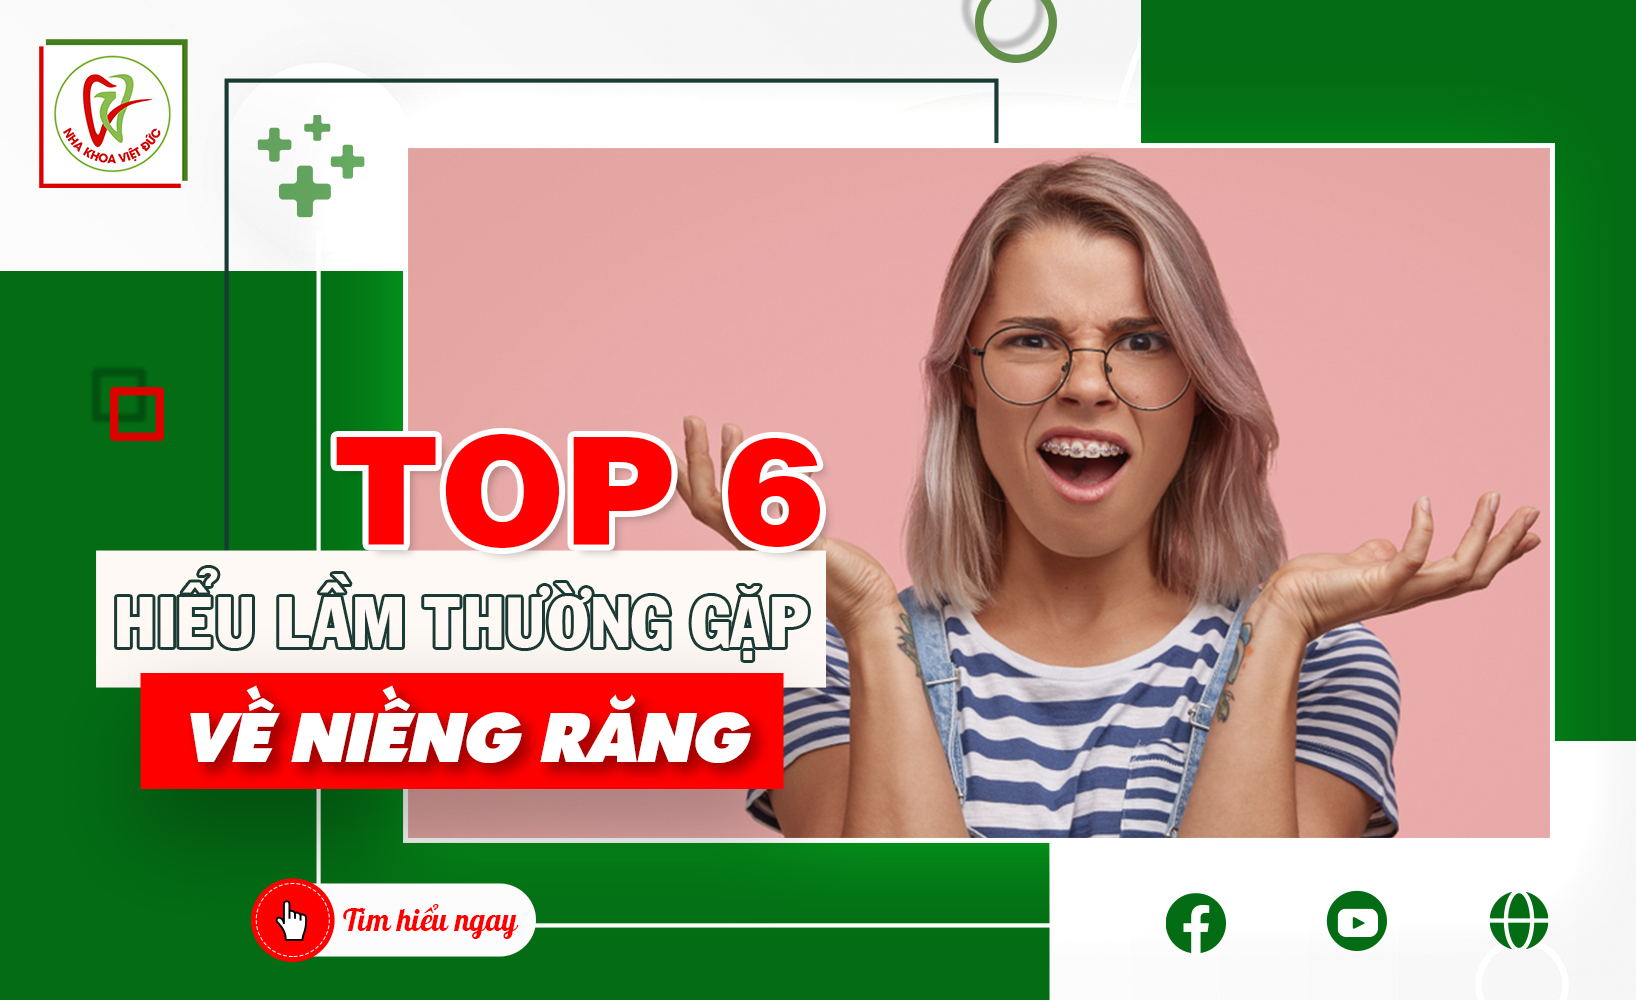 TOP 6 HIỂU LẦM THƯỜNG GẶP VỀ NIỀNG RĂNG